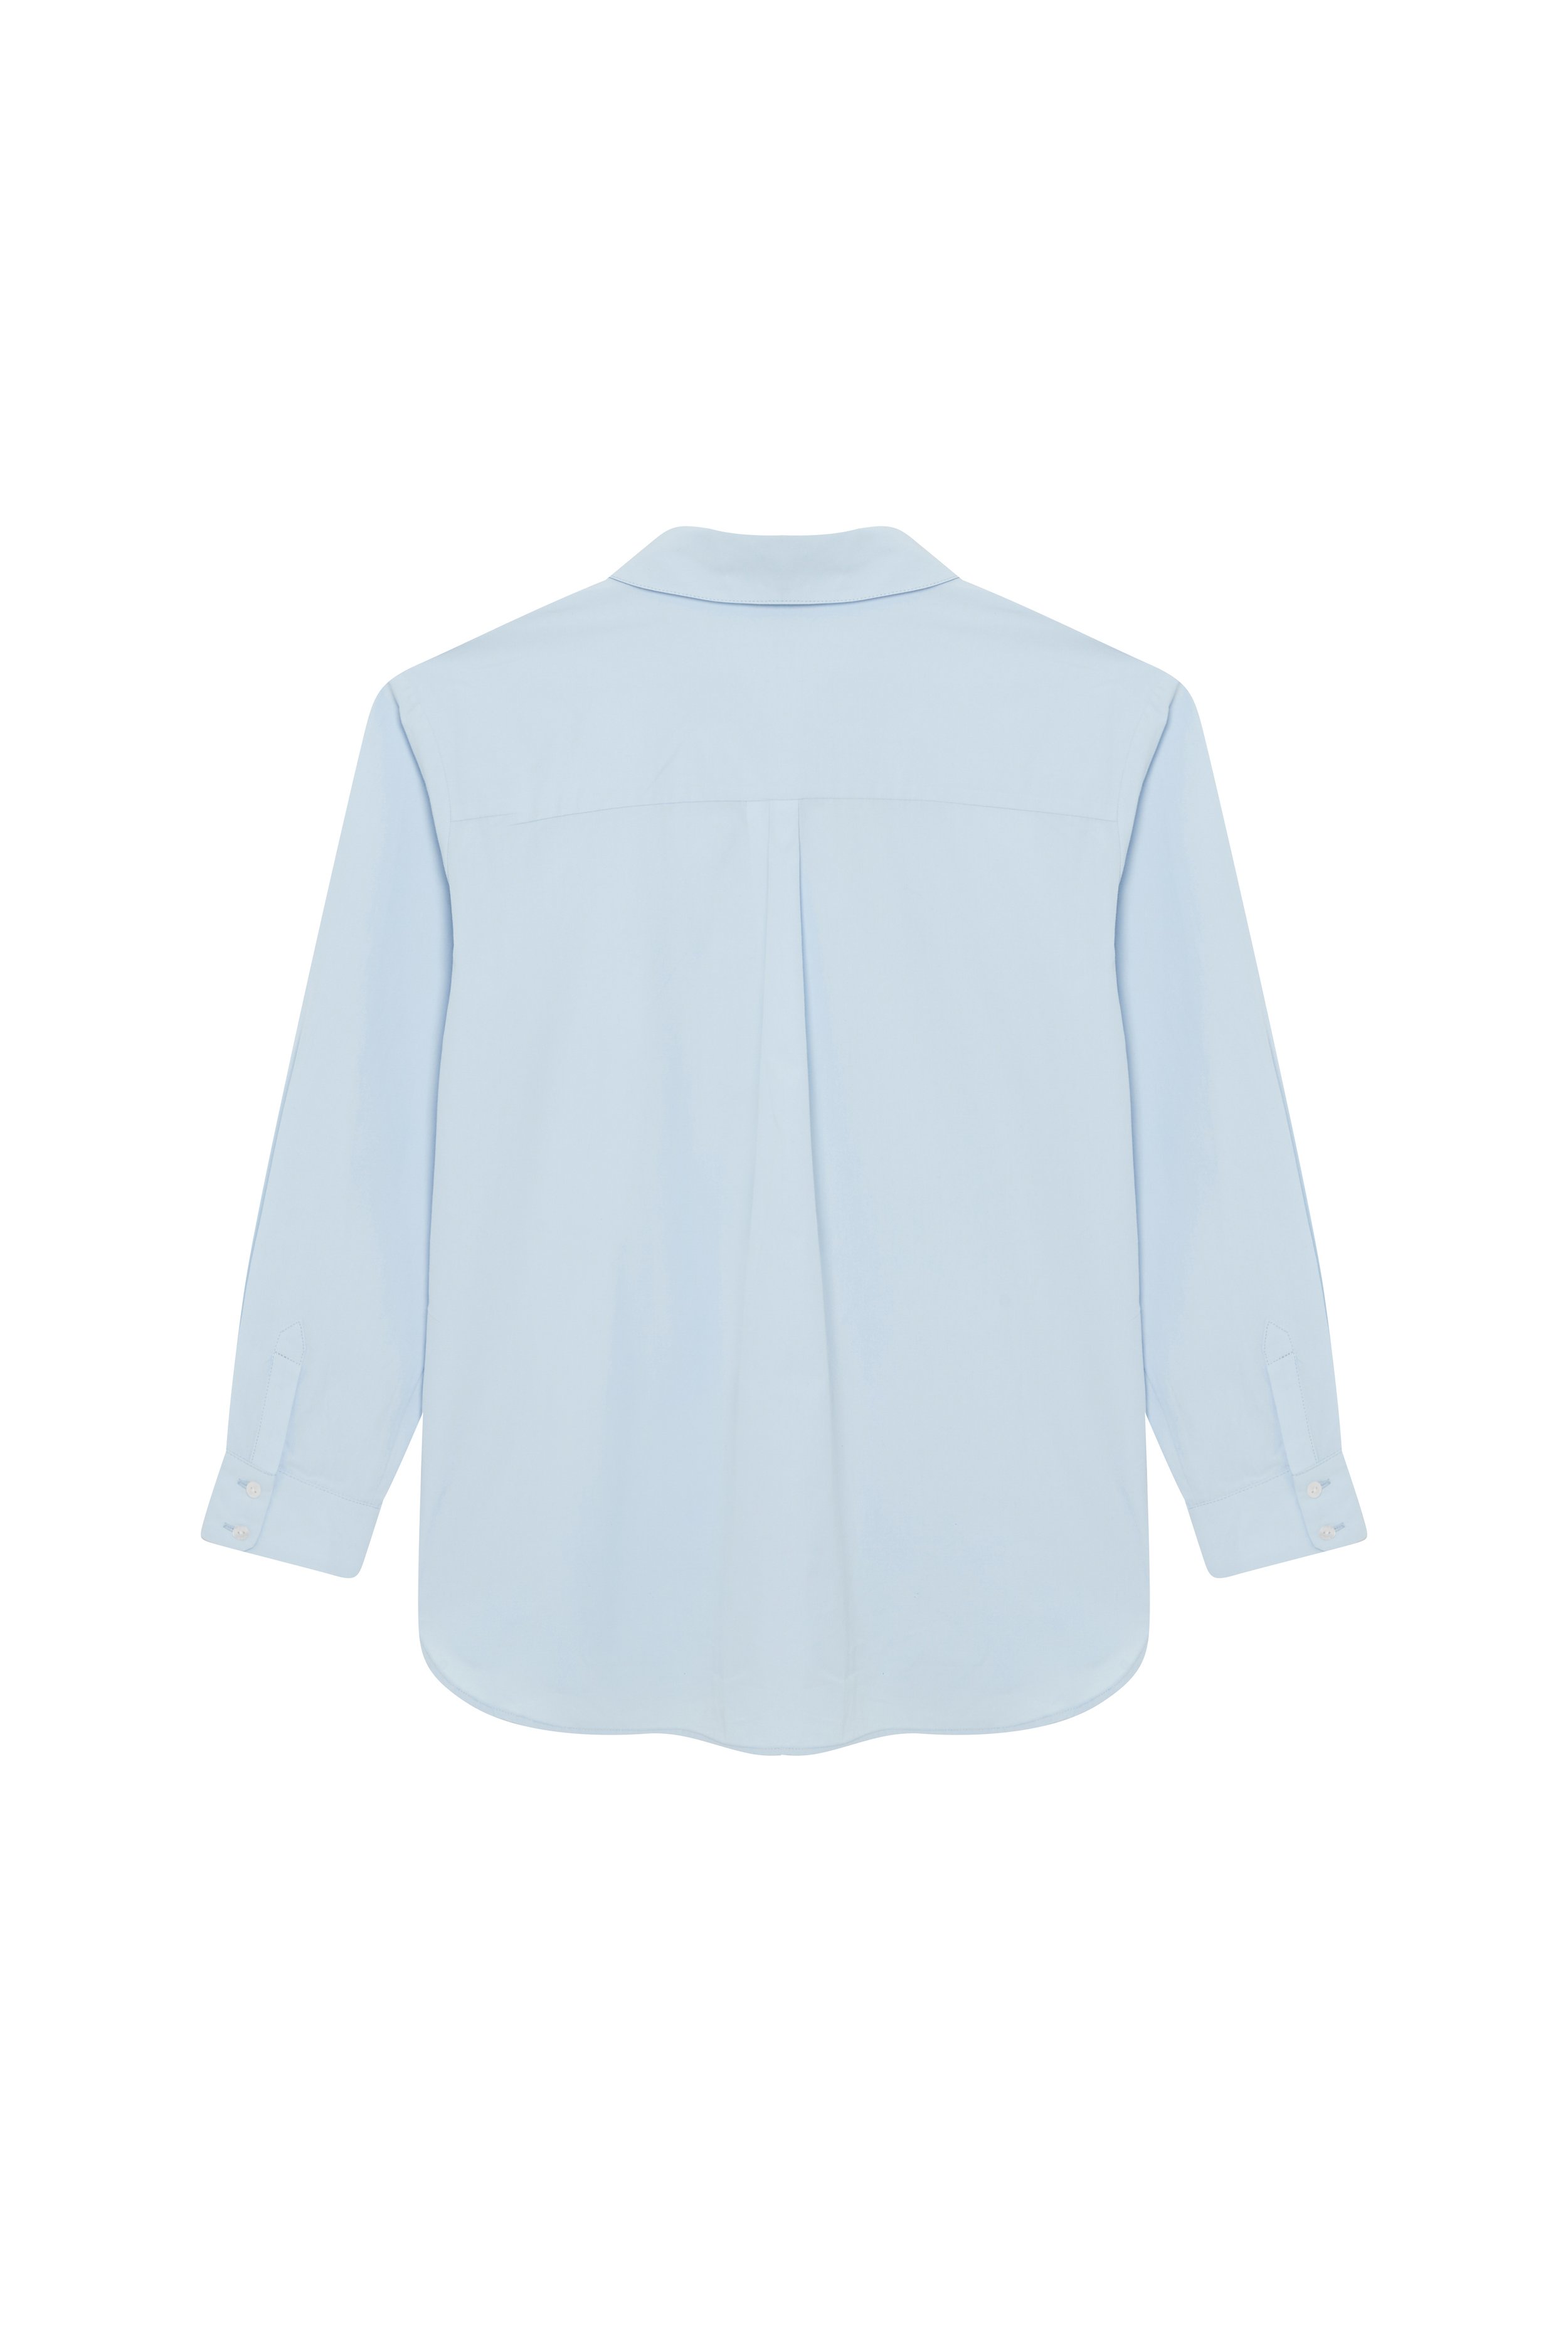 Le Grégoire - Iconic Oversized Boyfriend Shirt in GOTS Cotton — Rosae Paris